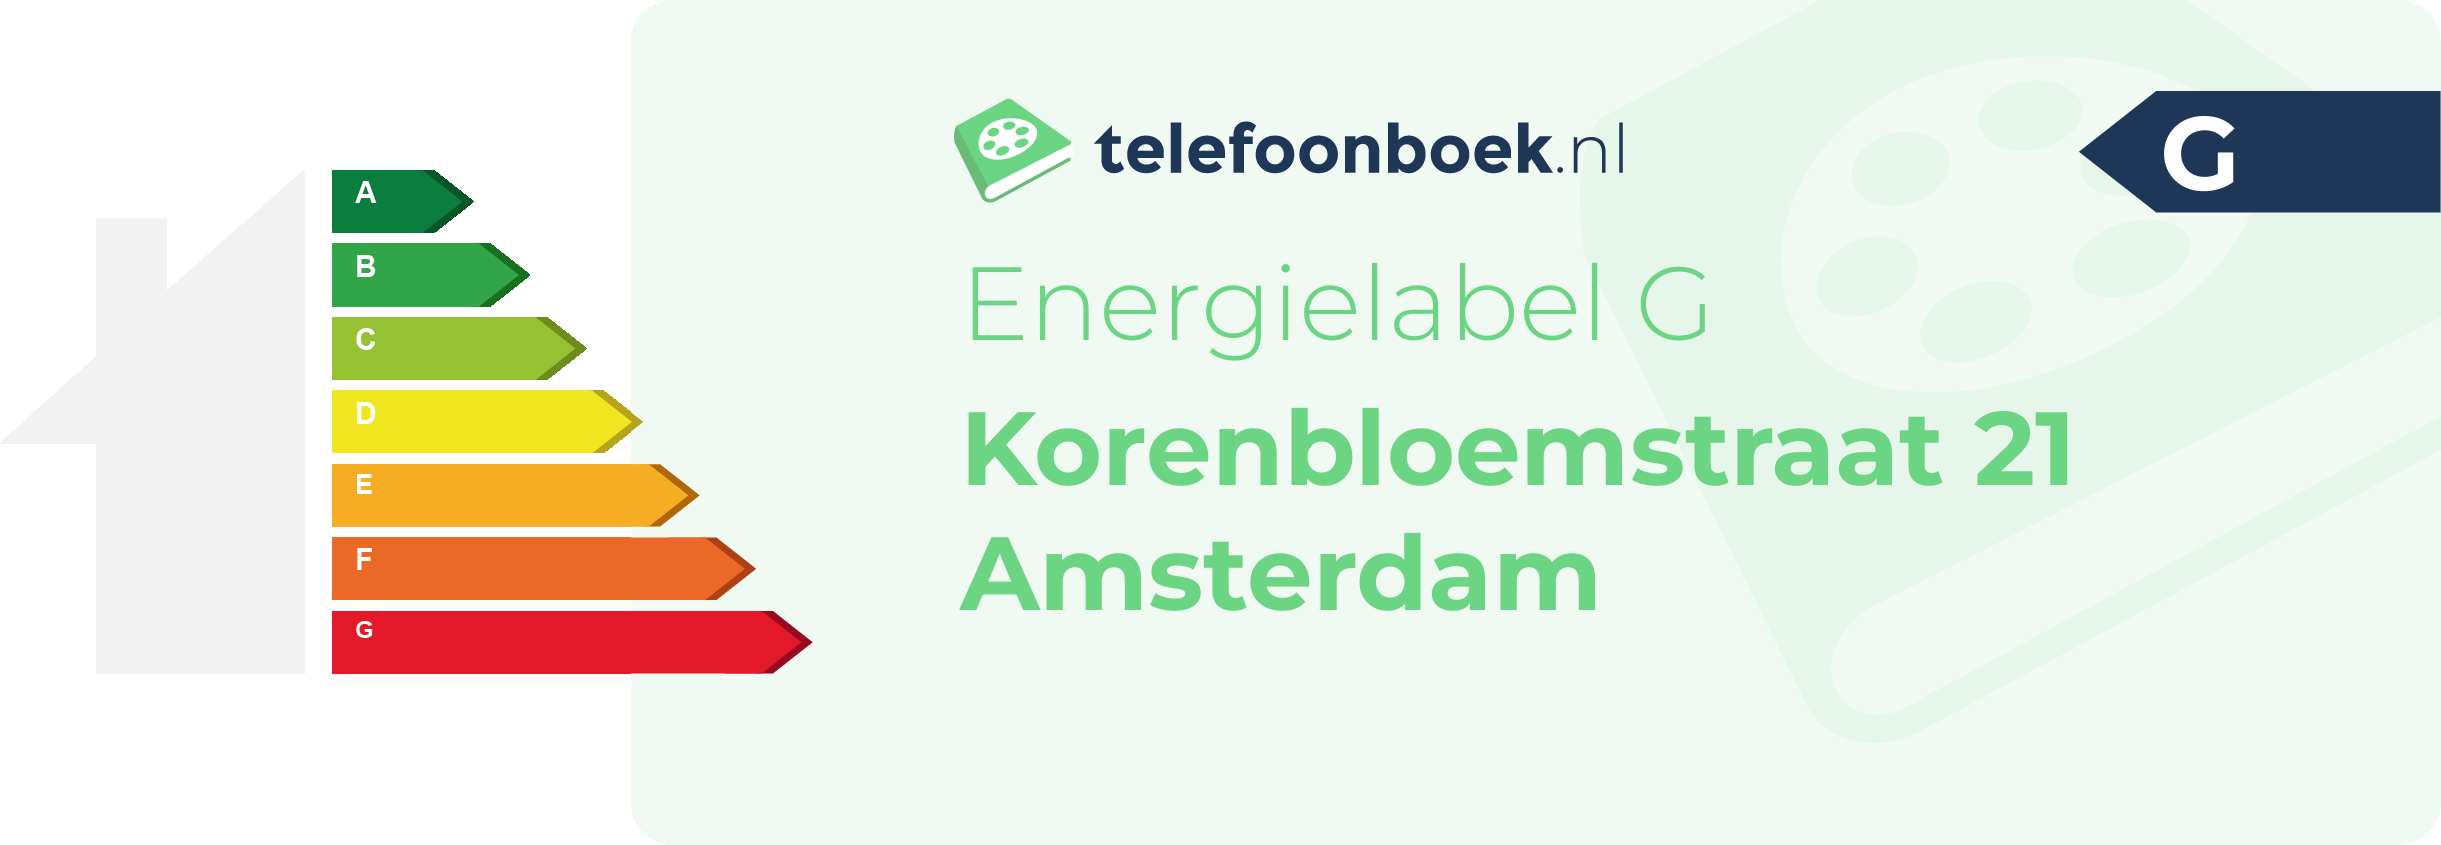 Energielabel Korenbloemstraat 21 Amsterdam